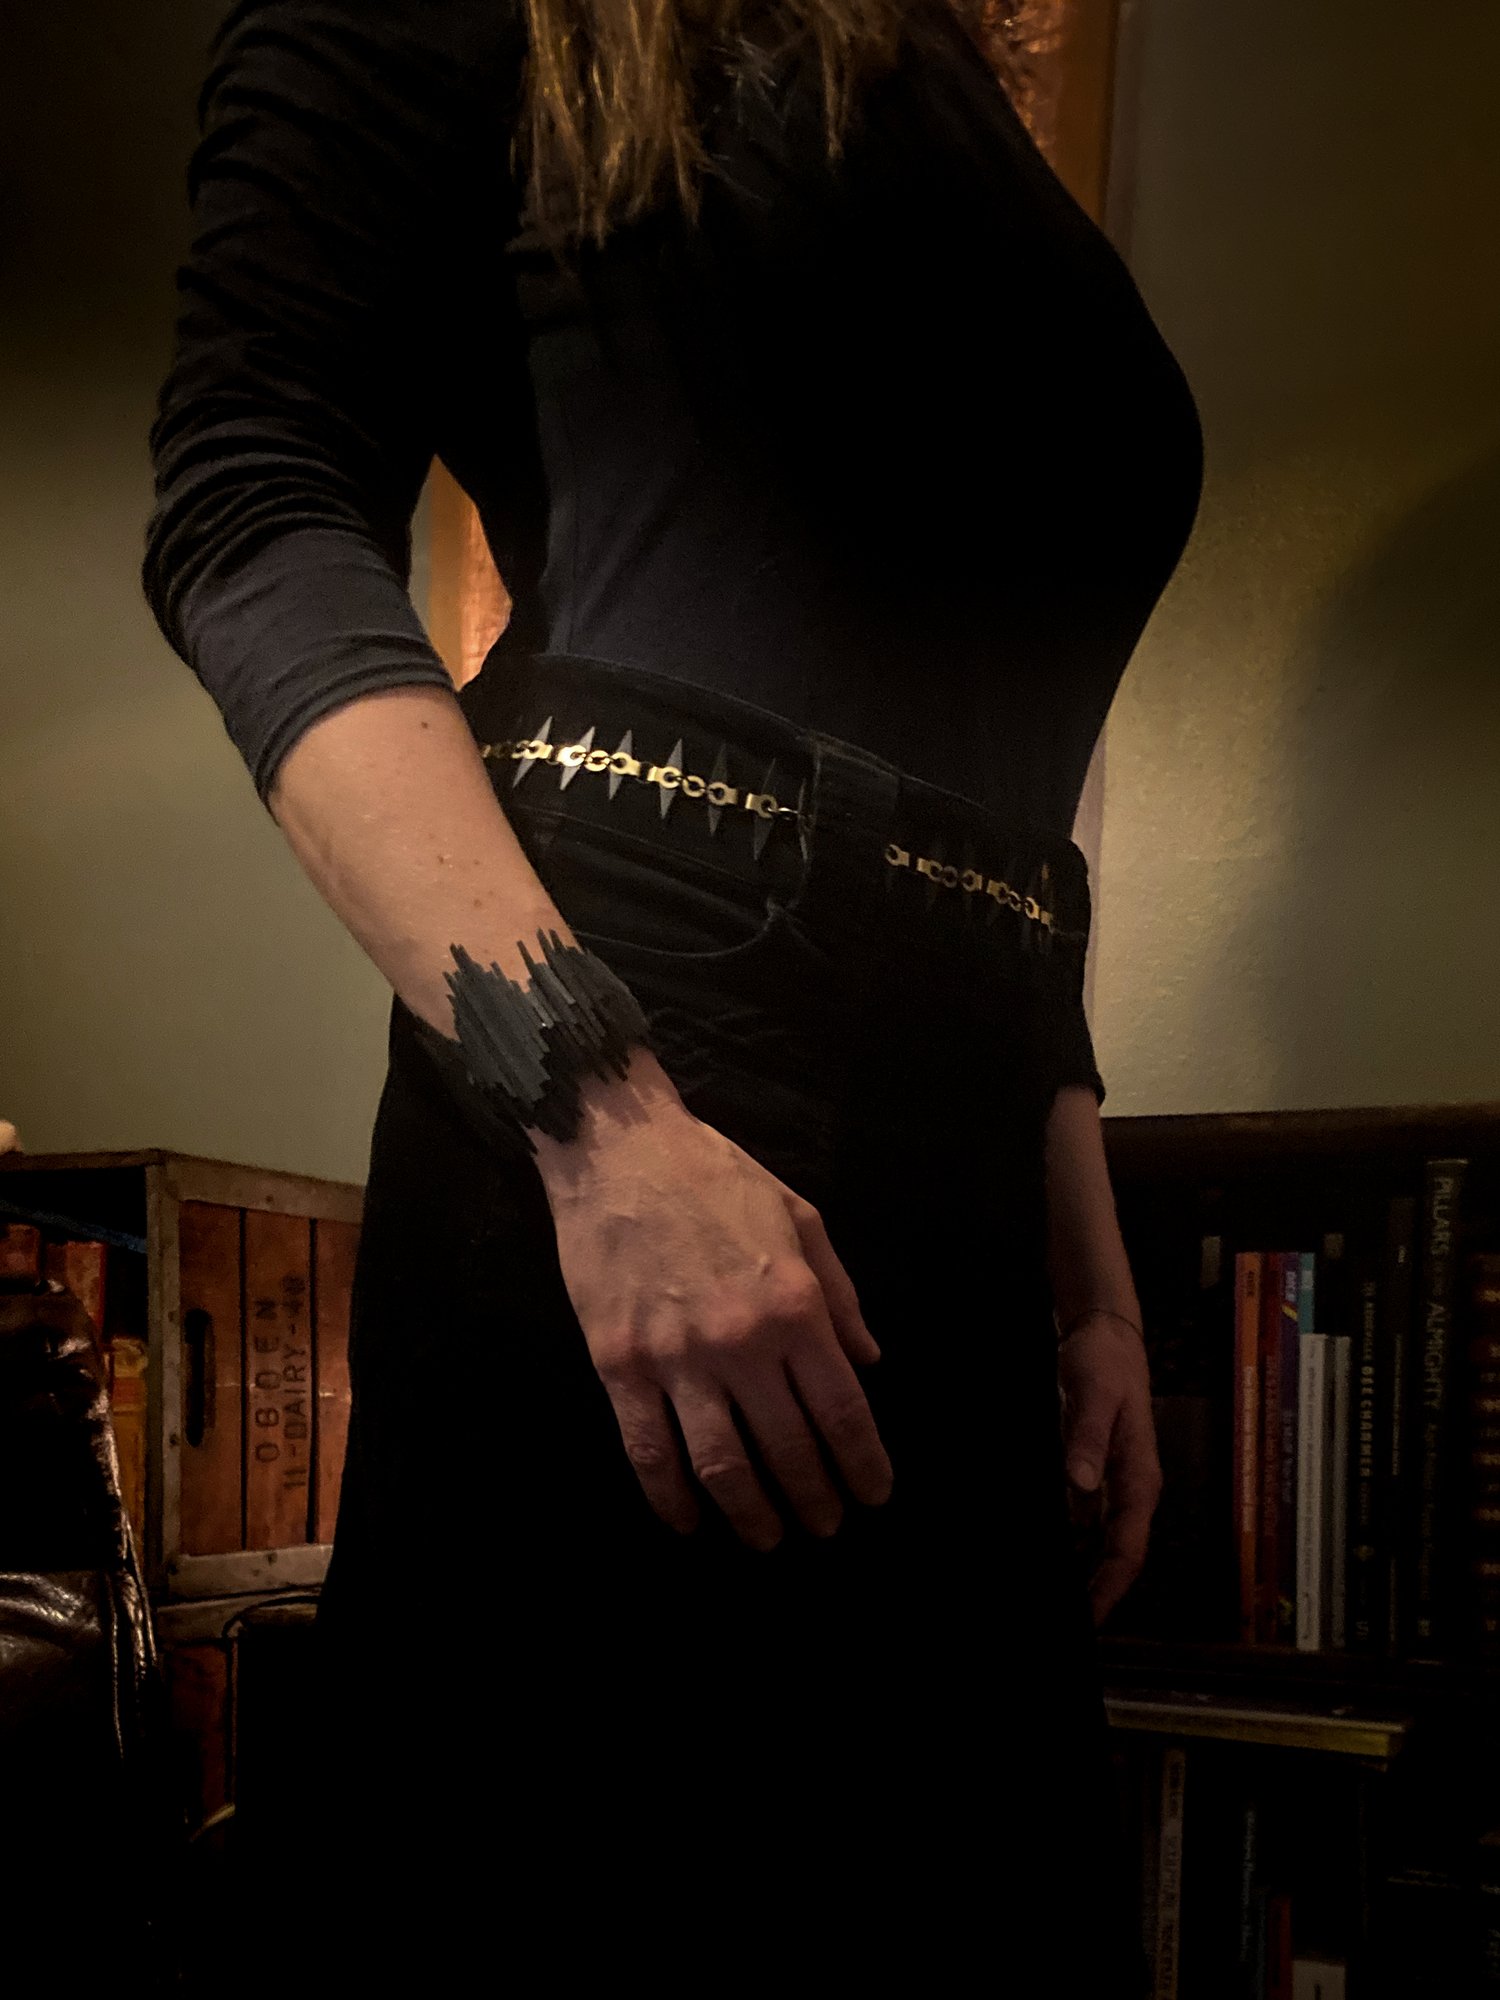 Image of SPIRIT || Vision - Black & Brass, Long Necklace/Belt